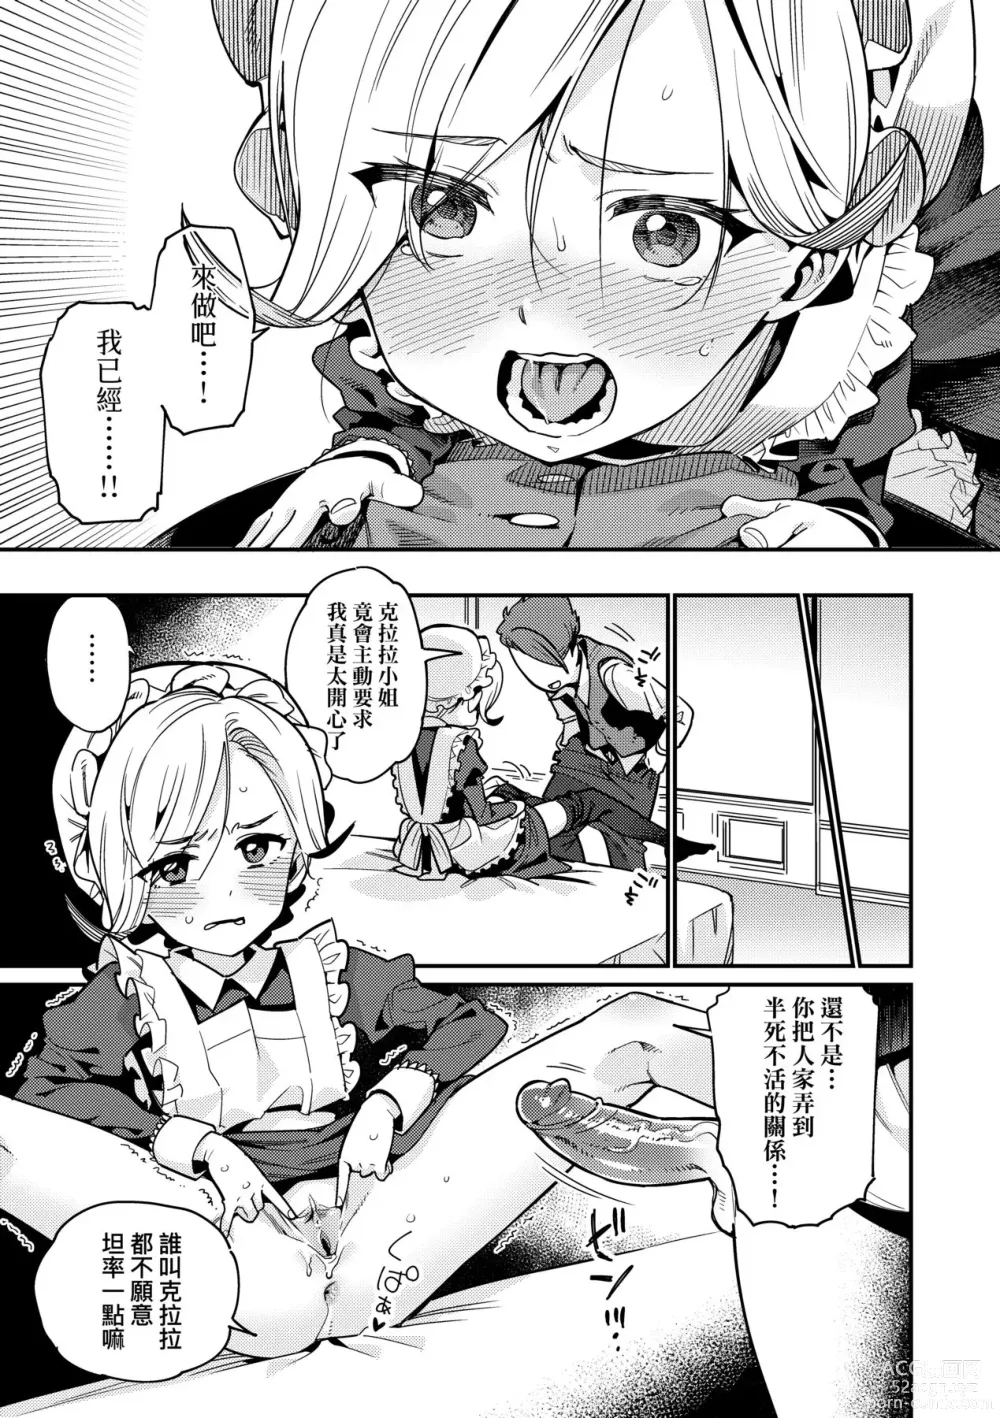 Page 16 of manga Itoshiki Wagaya (decensored)